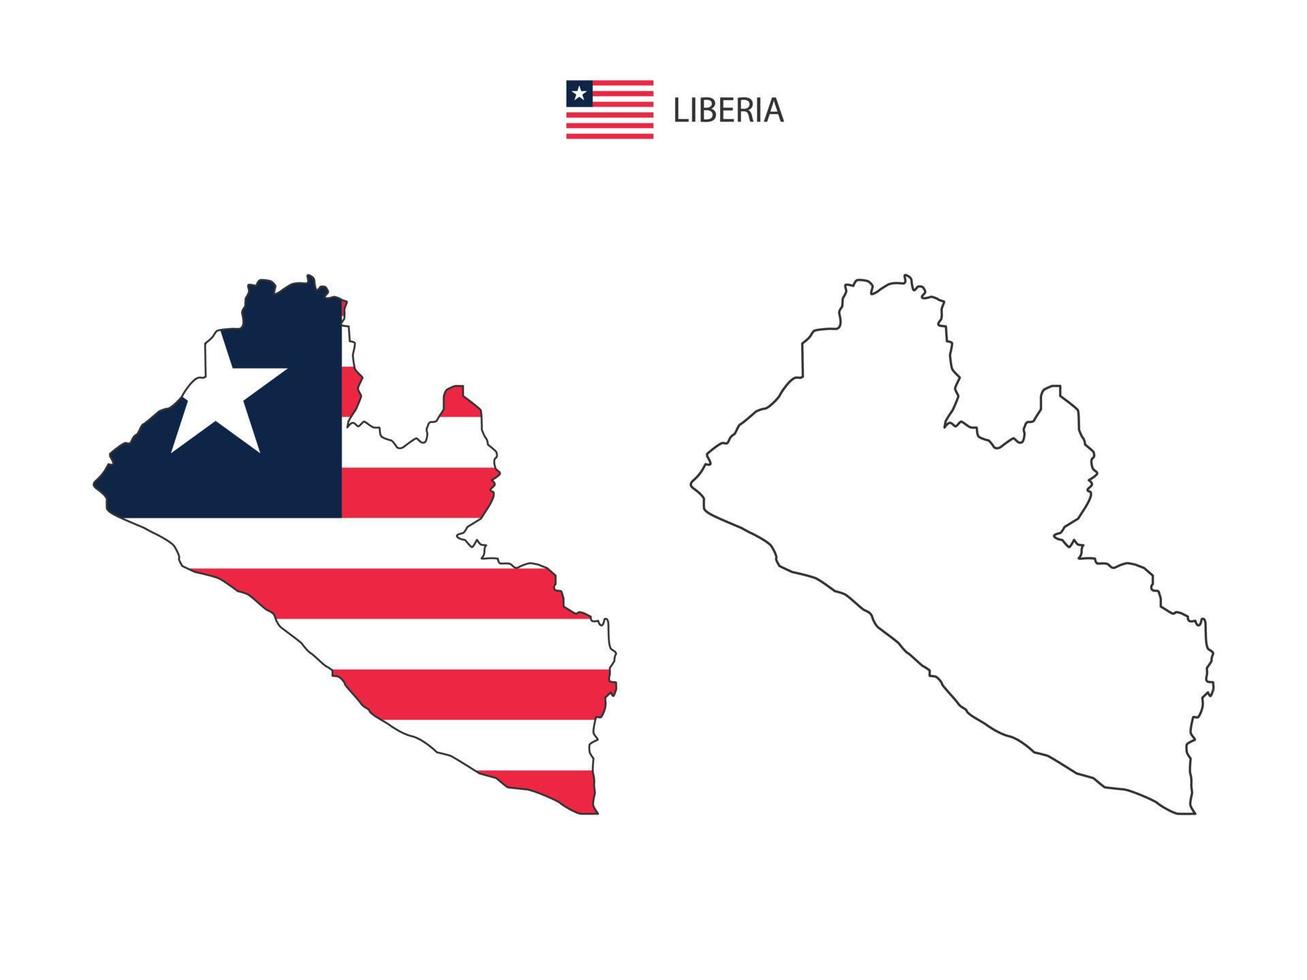 vector de ciudad de mapa de liberia dividido por estilo de simplicidad de contorno. tiene 2 versiones, versión de línea delgada negra y versión de color de bandera de país. ambos mapas estaban en el fondo blanco.